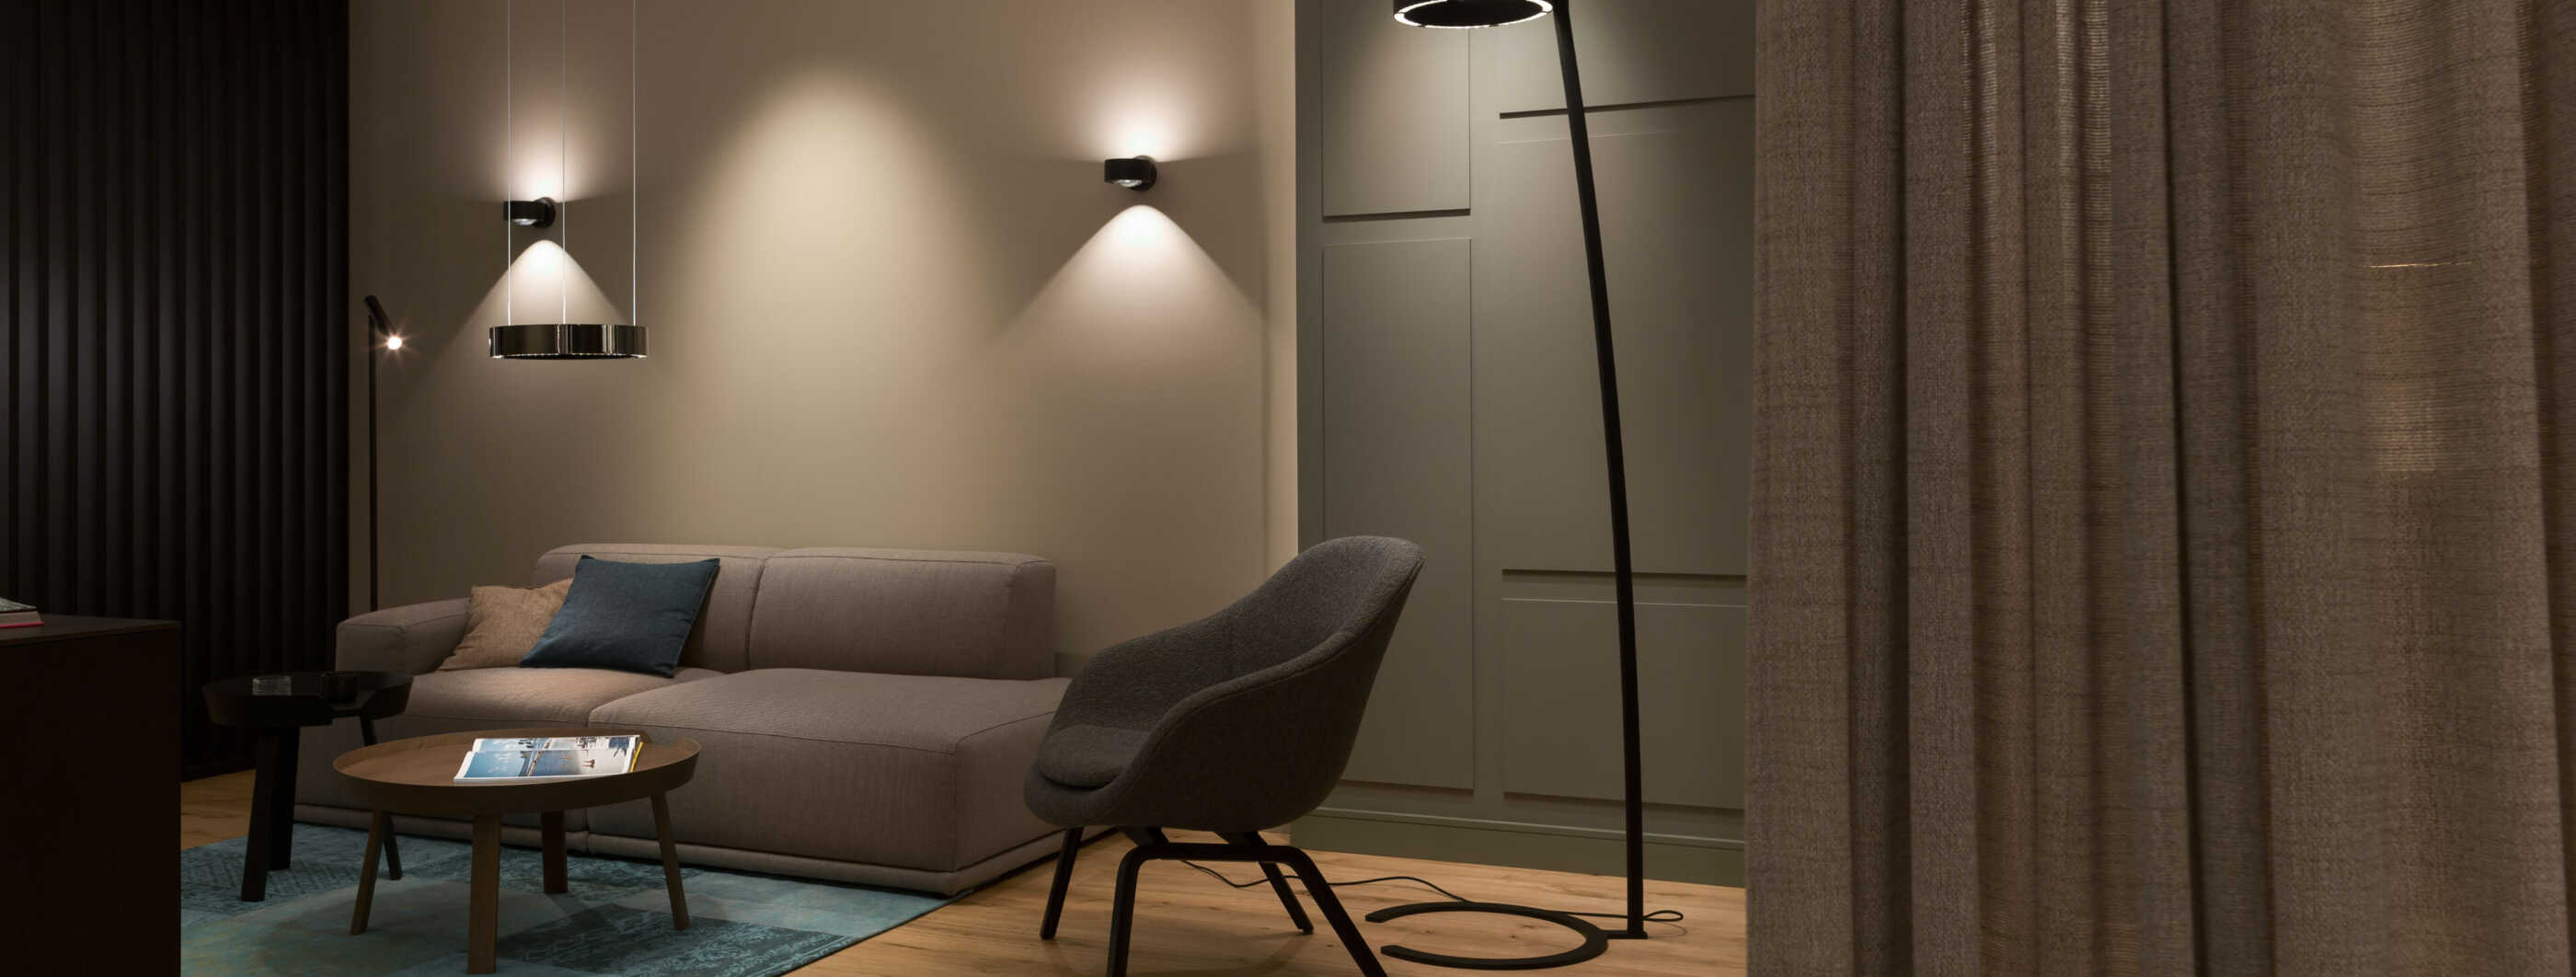 Perfekte Lichtplanung dargestellt anhand eines optimal ausgeleuchteten Wohnzimmers